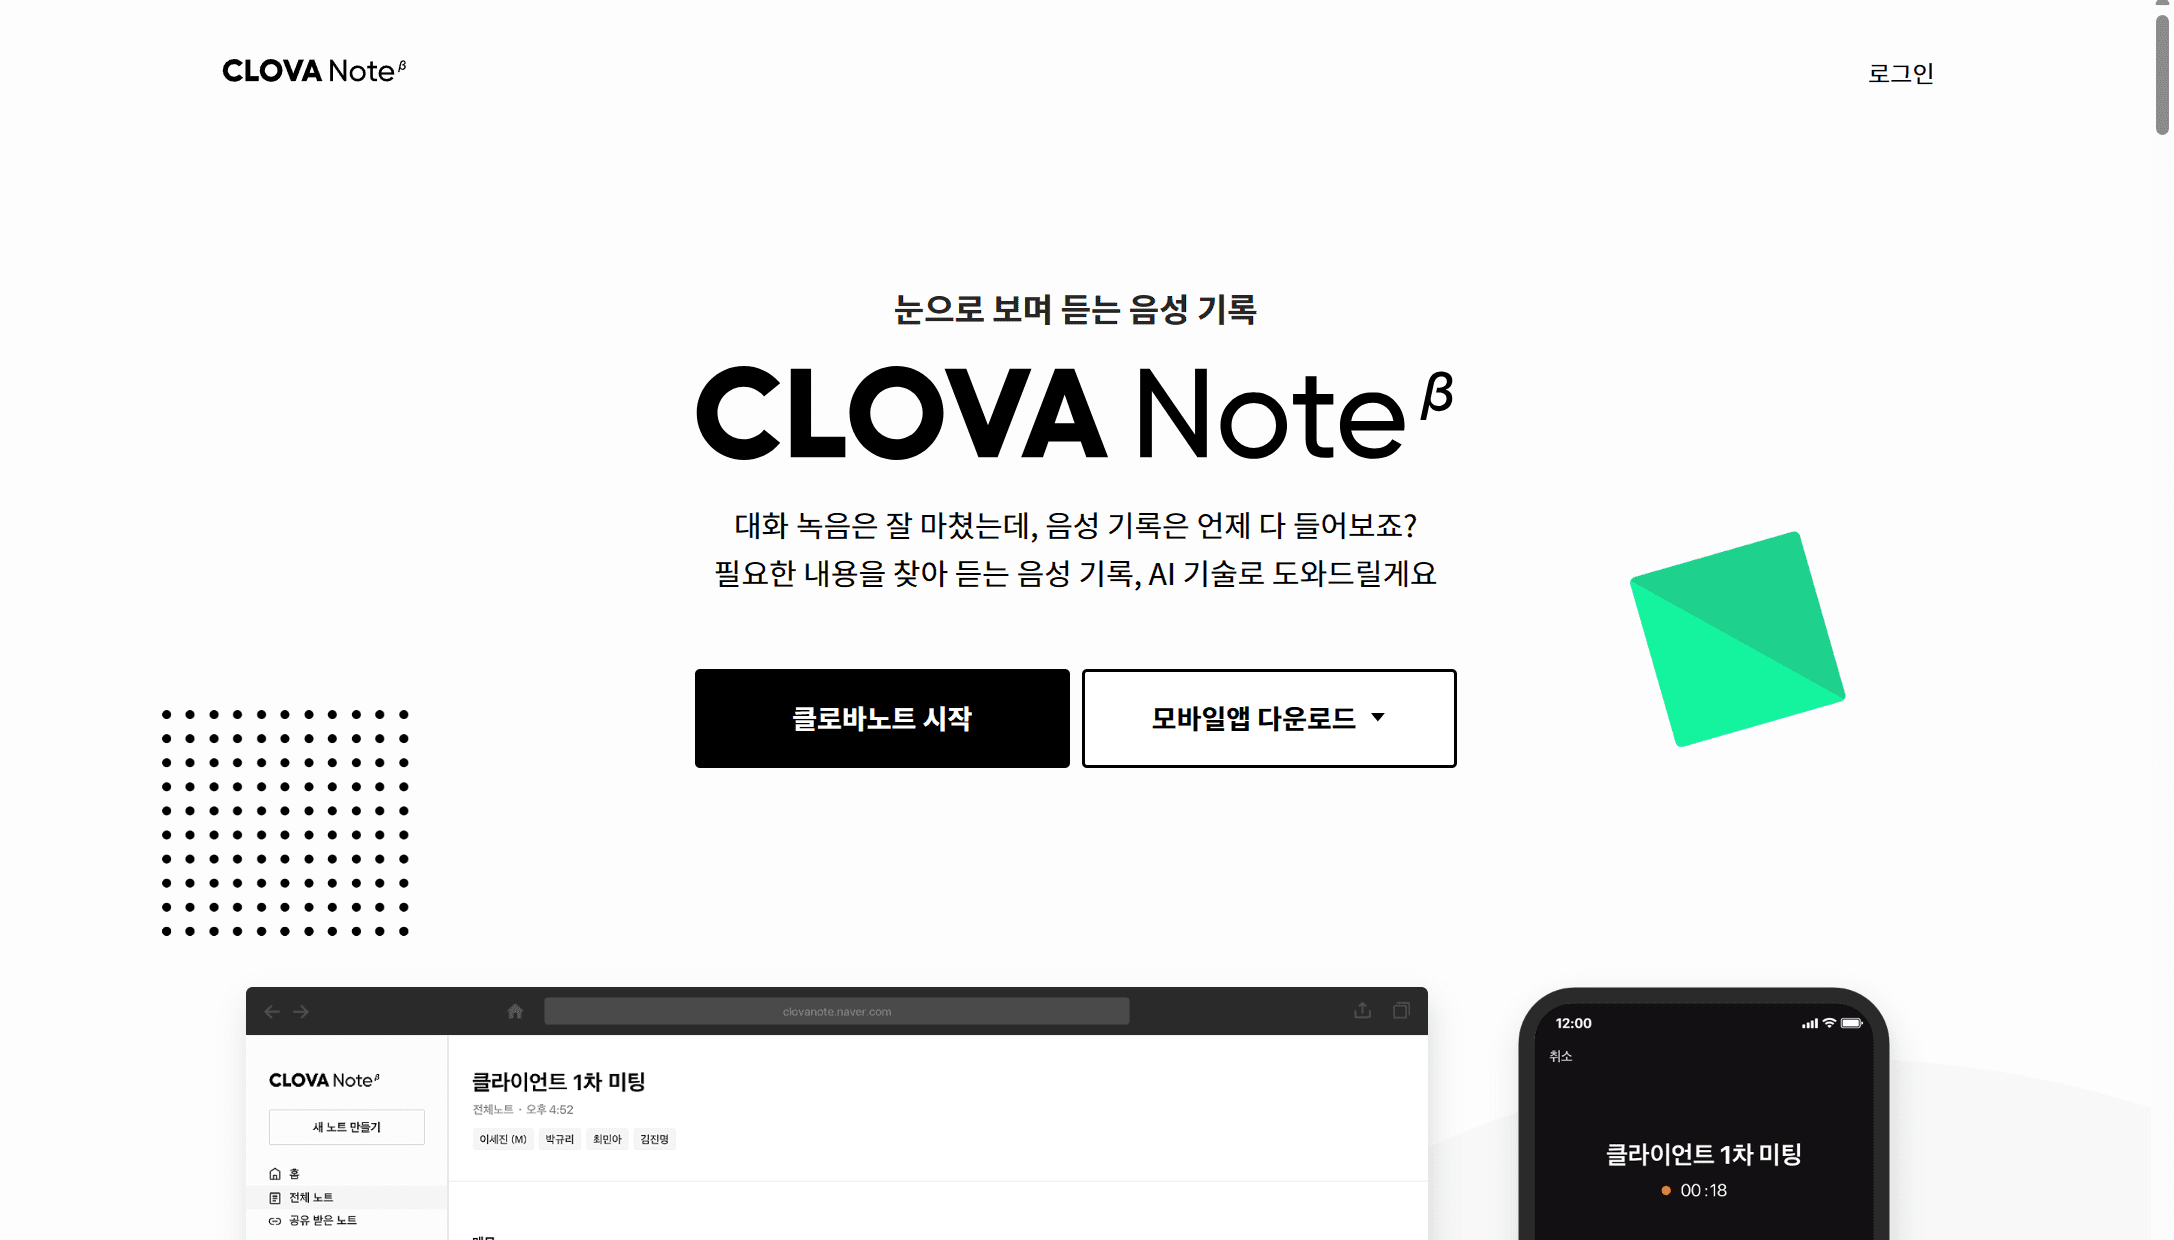 Clova Note es una potente herramienta coreana de transcripción de reuniones